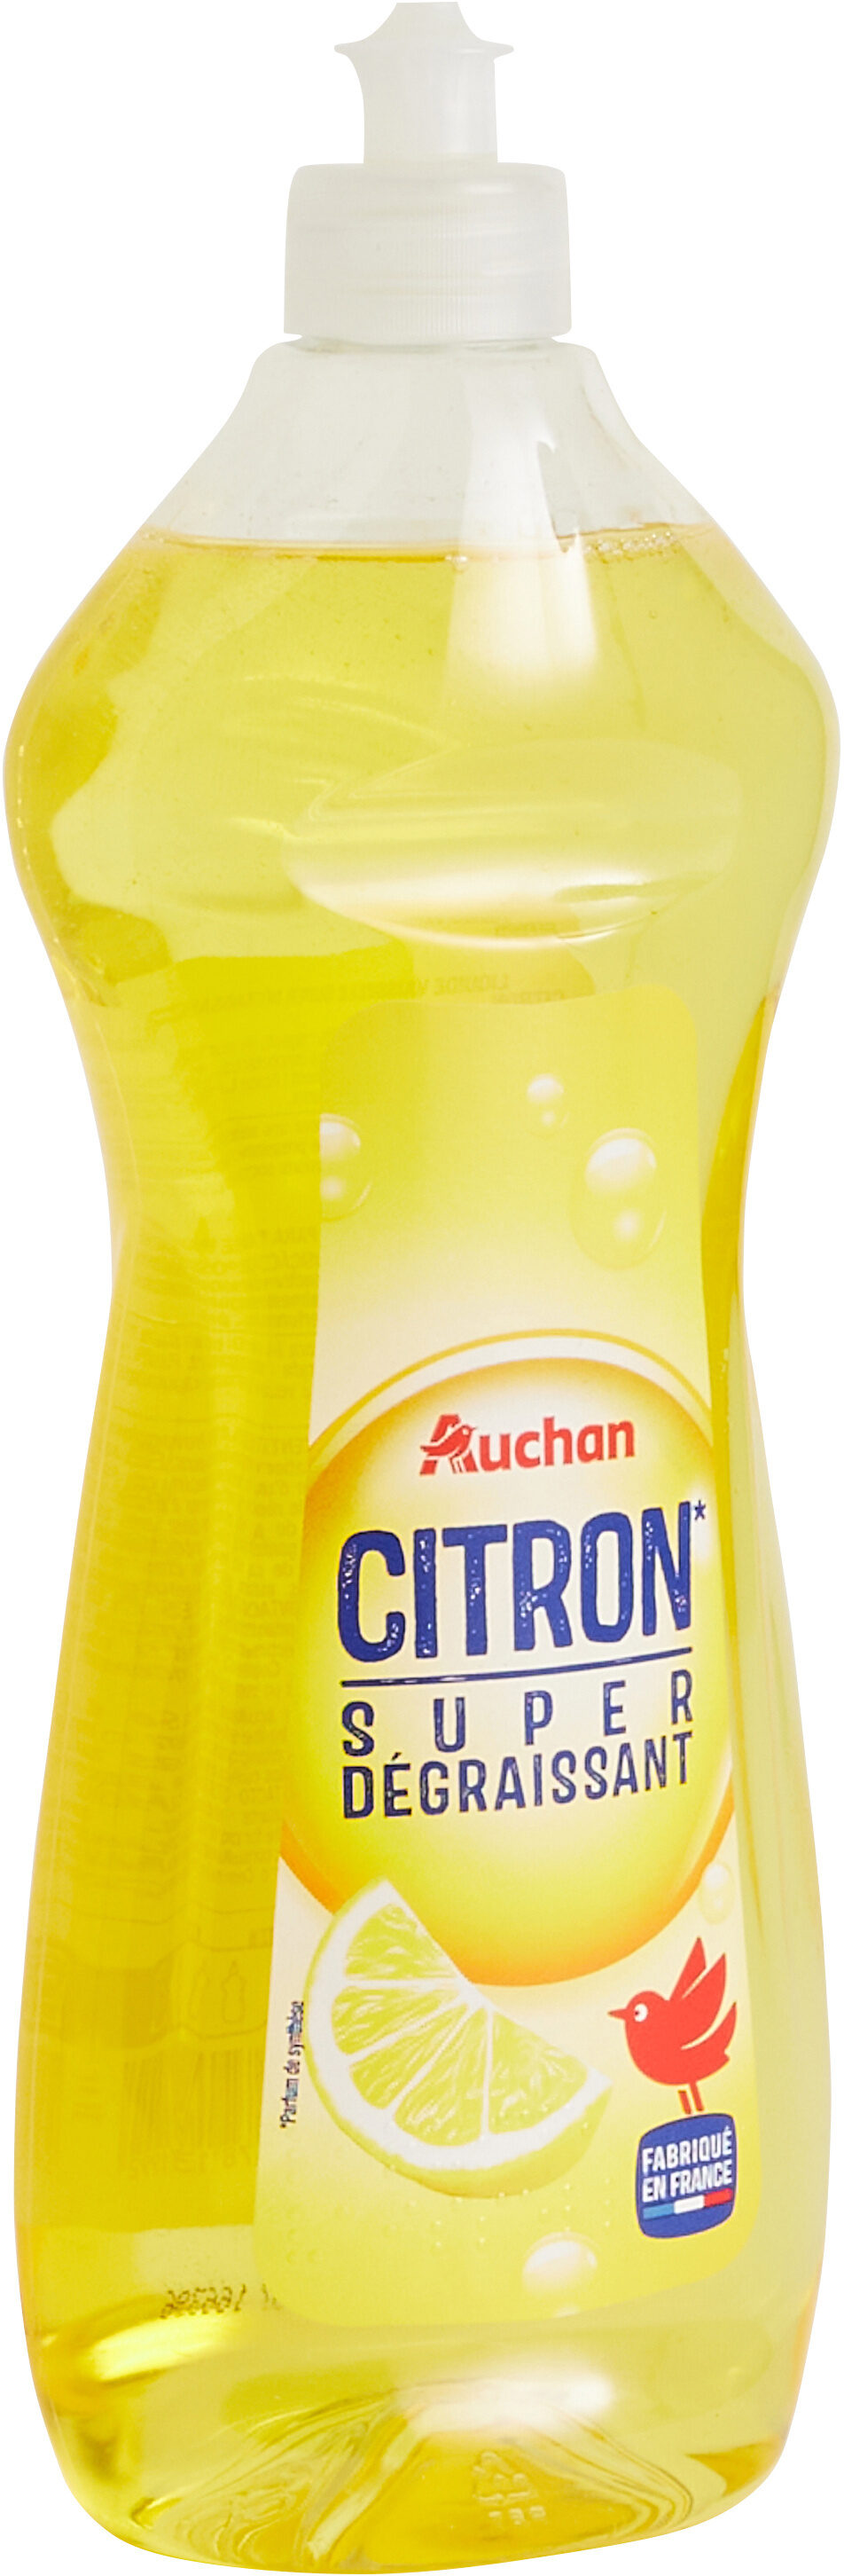 Liquide vaisselle - Super dégraissant citron 750mL HU RO PL - Produit - fr